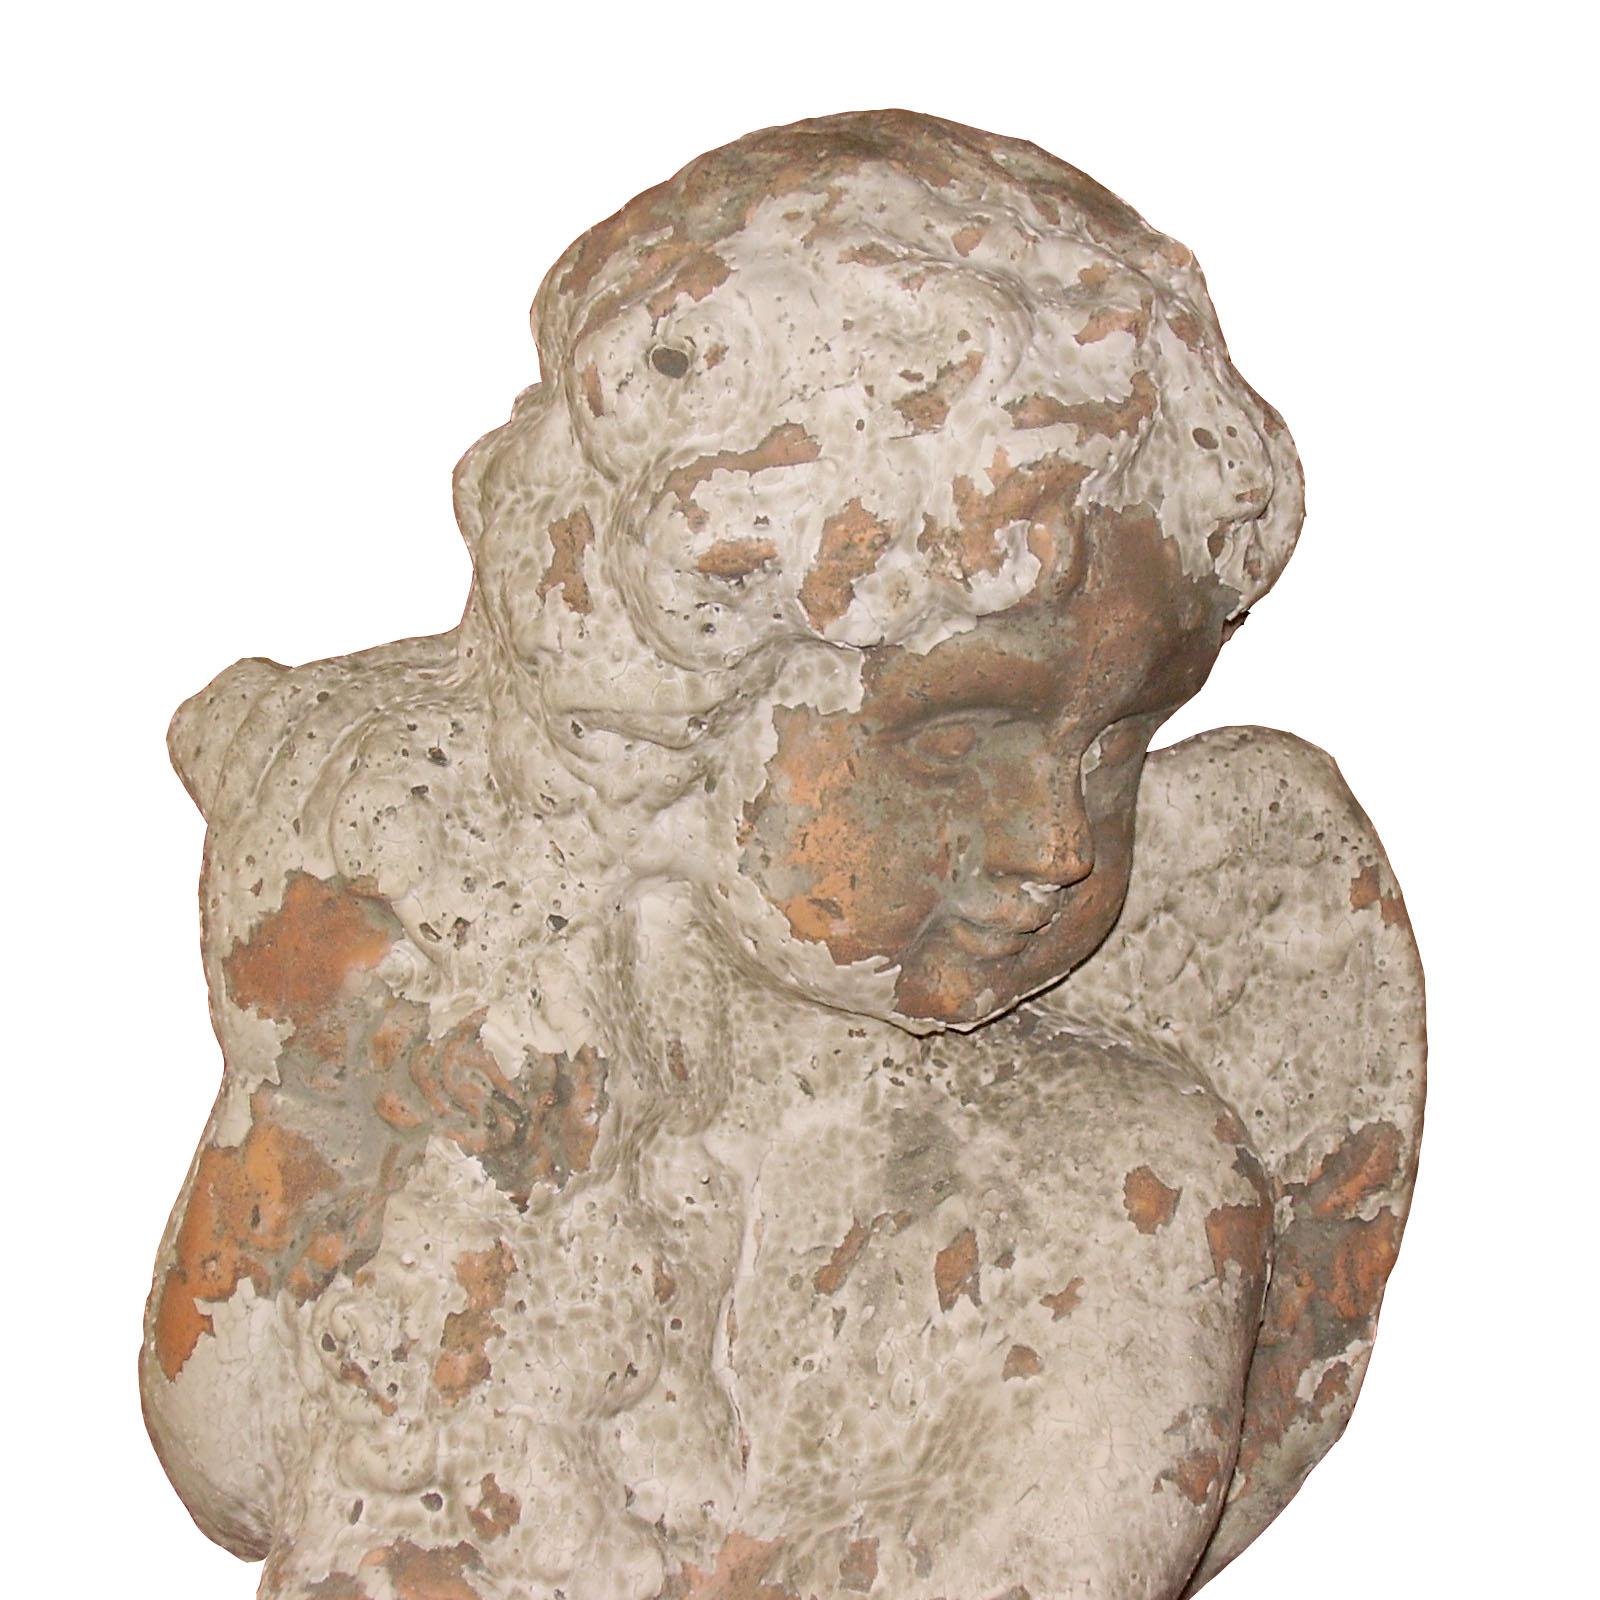 Preziosa ancient Italian statue depicting 